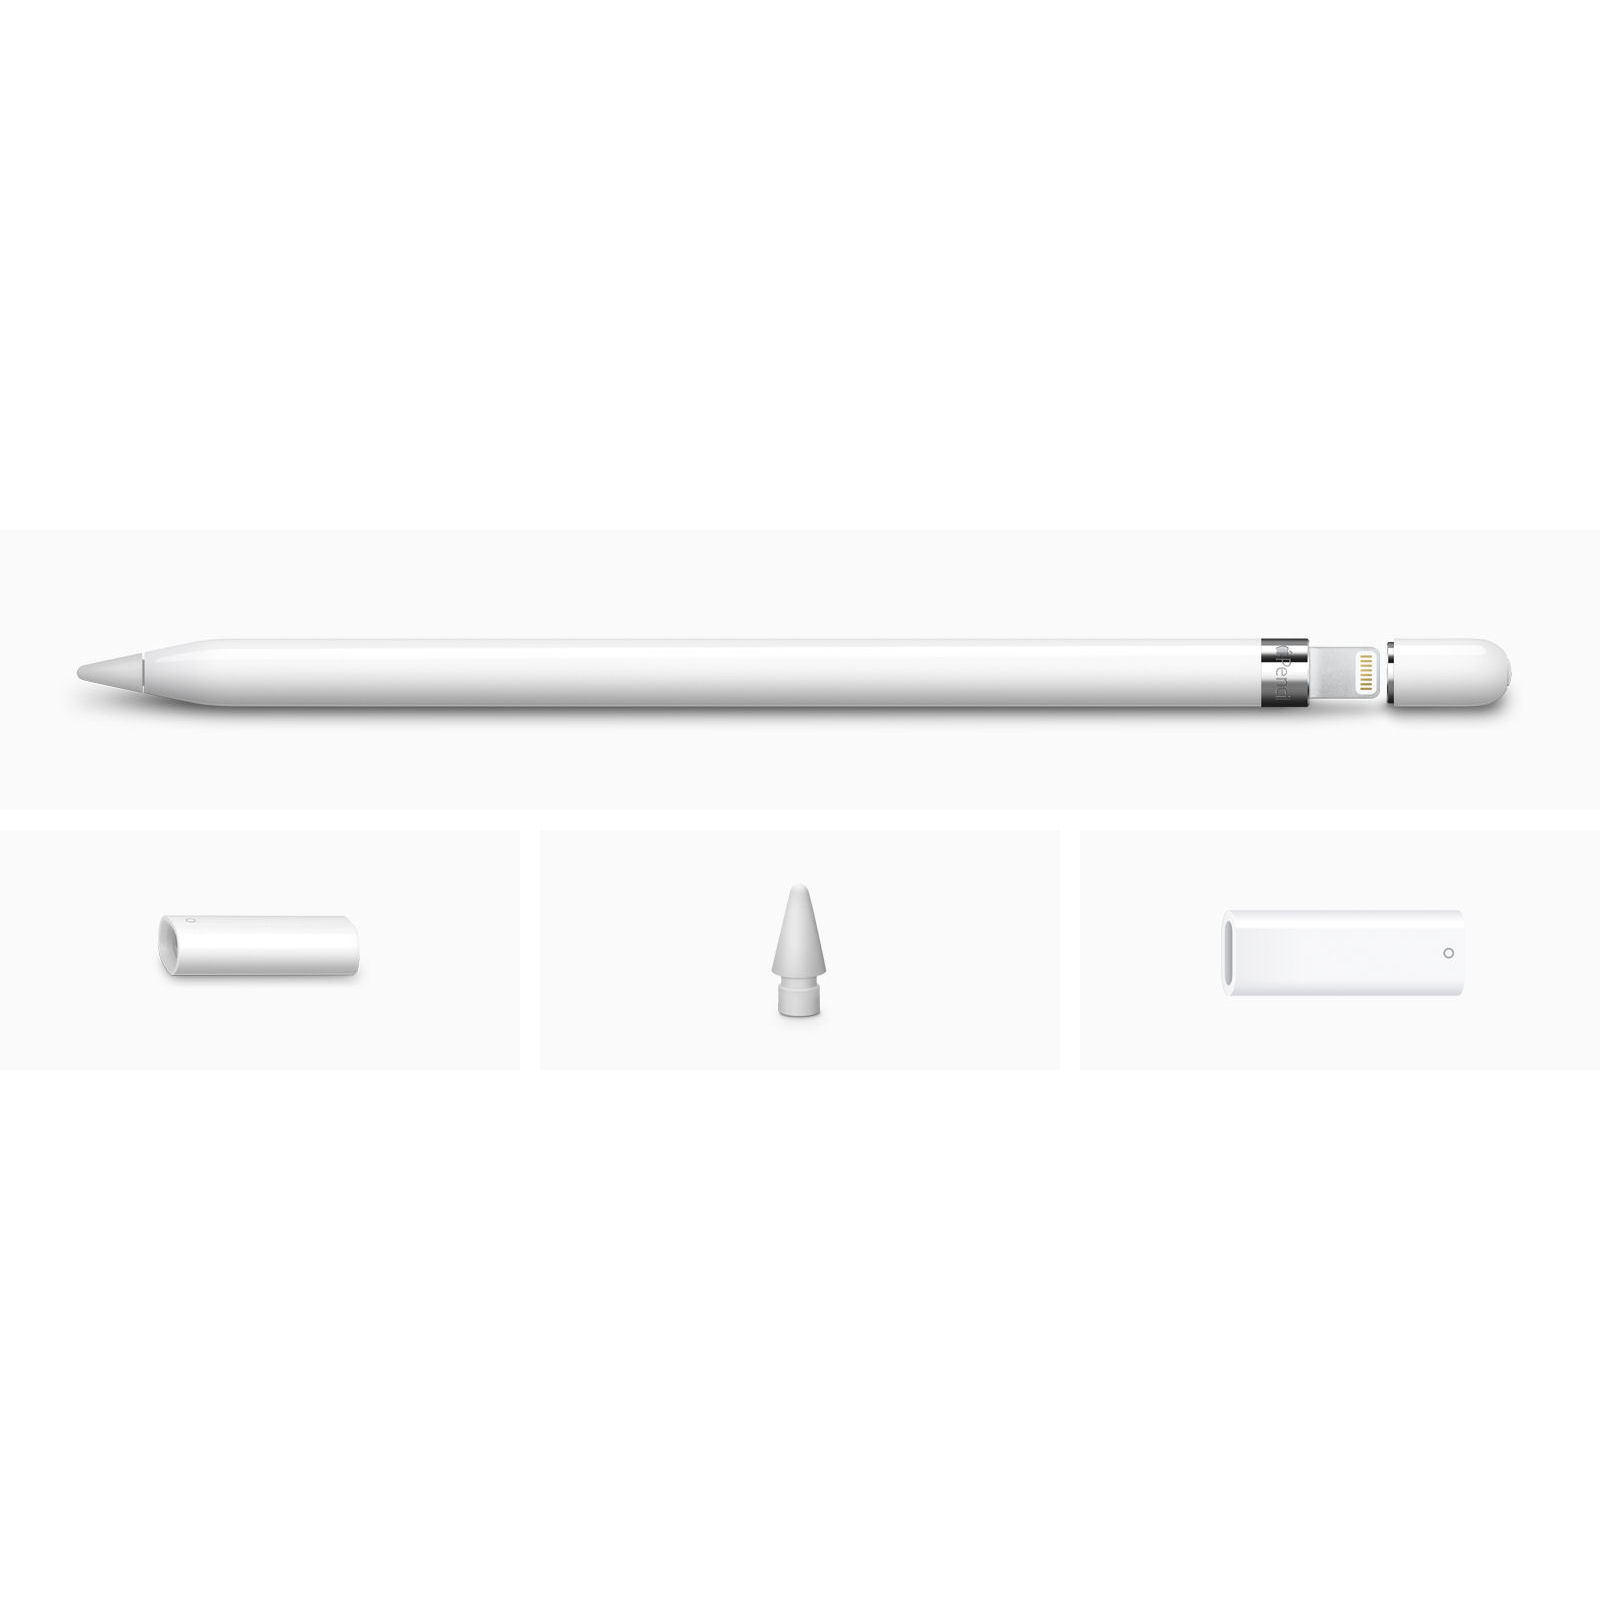 Apple Pencil für iPad Pro 12.9 iPad Pro 9.7 iPad Pro 10.5 mit USB-C Pencil Adapter